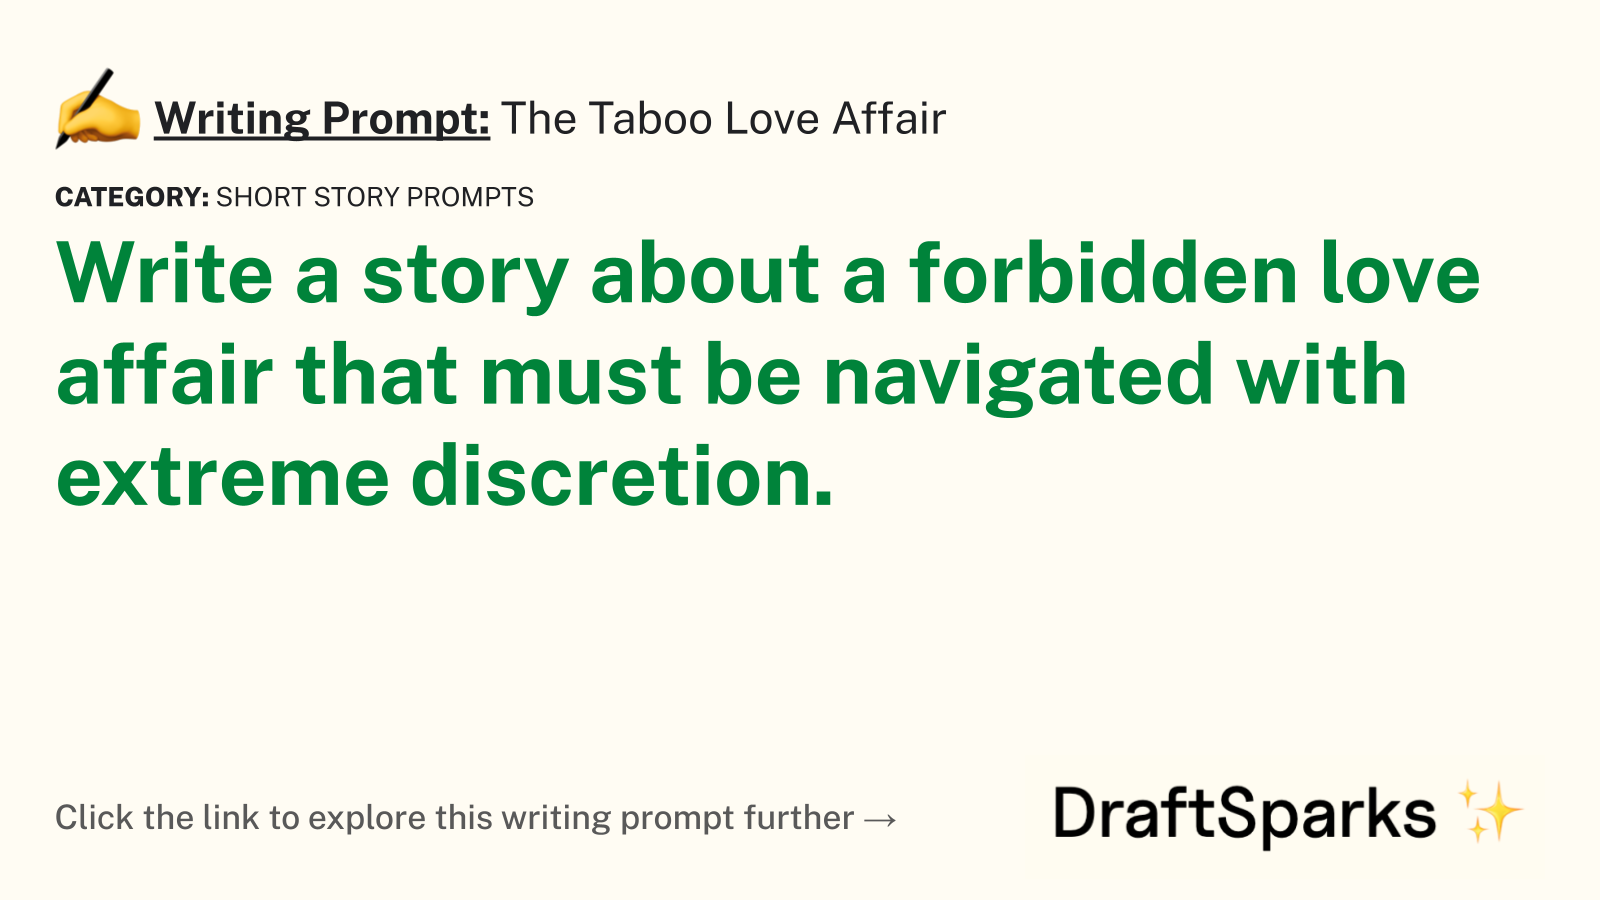 The Taboo Love Affair